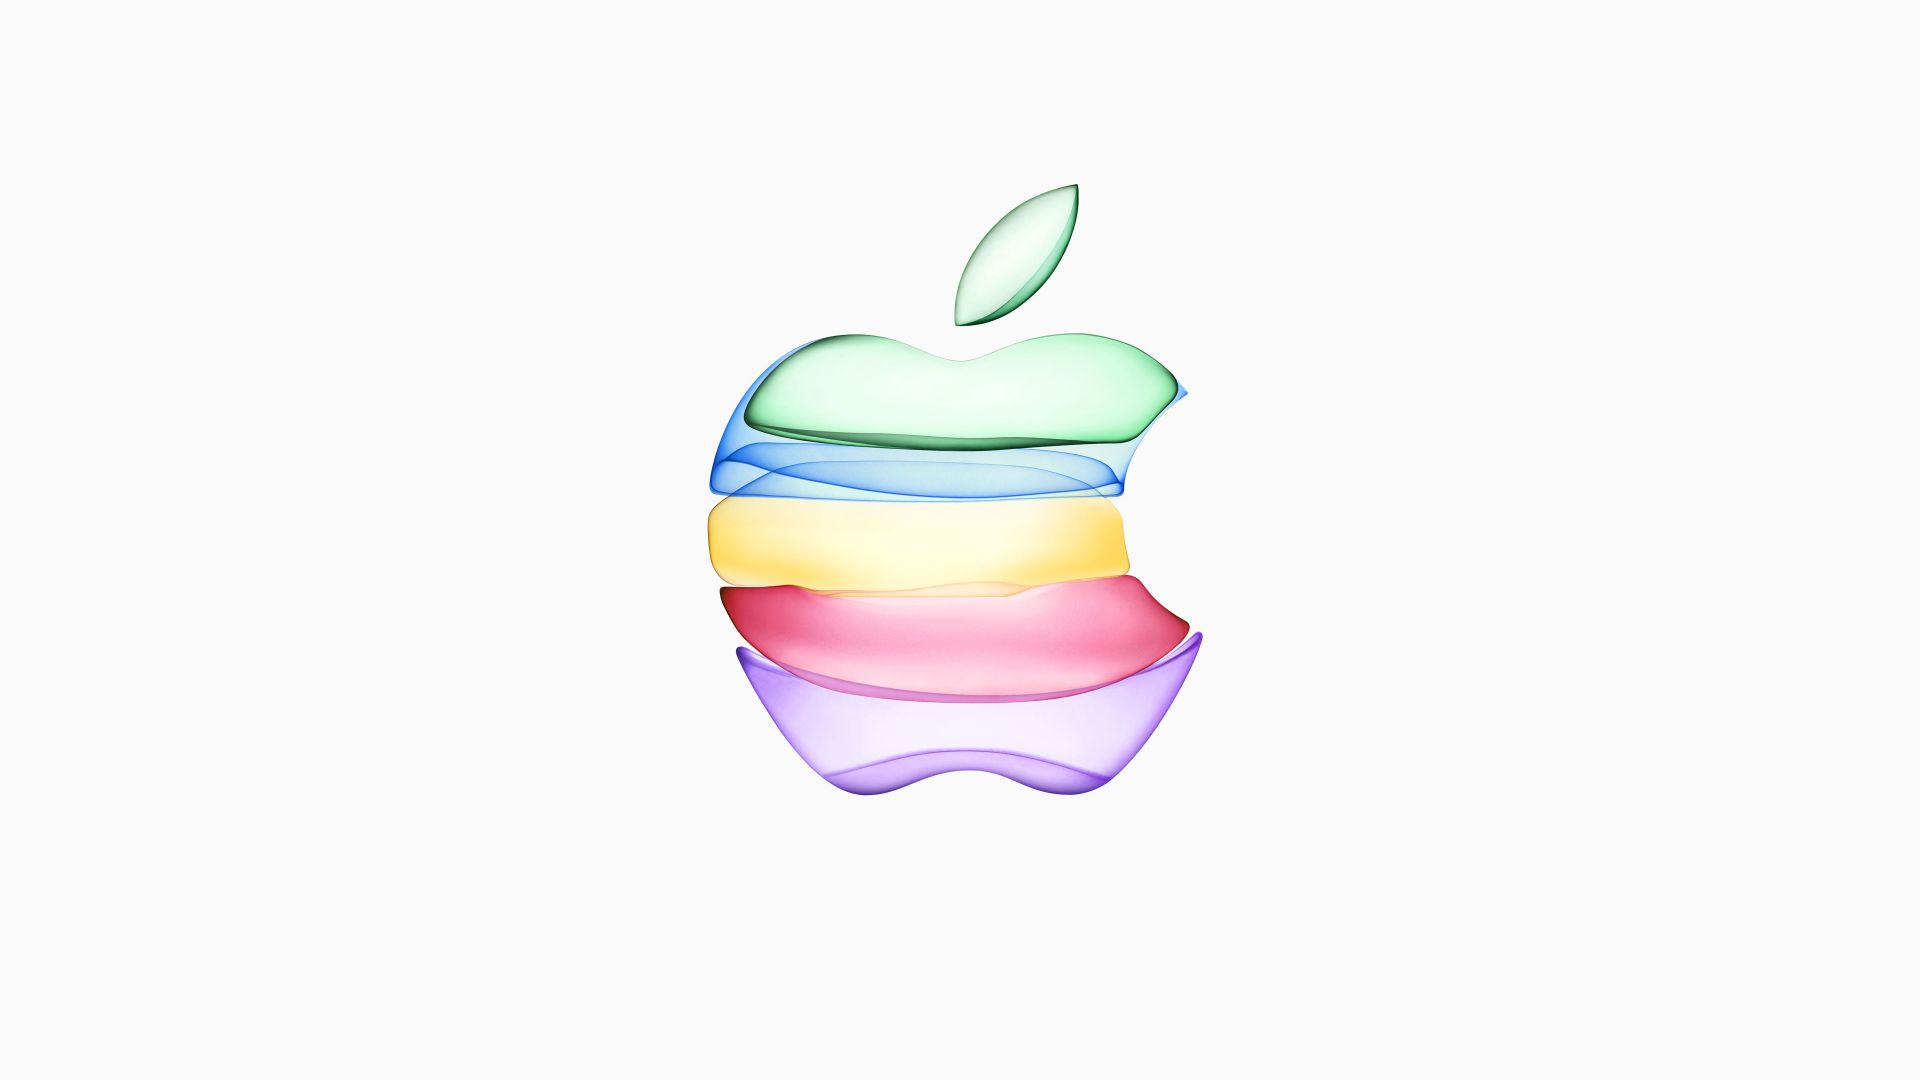 Apple September 2019 Event, 4K (horizontal)